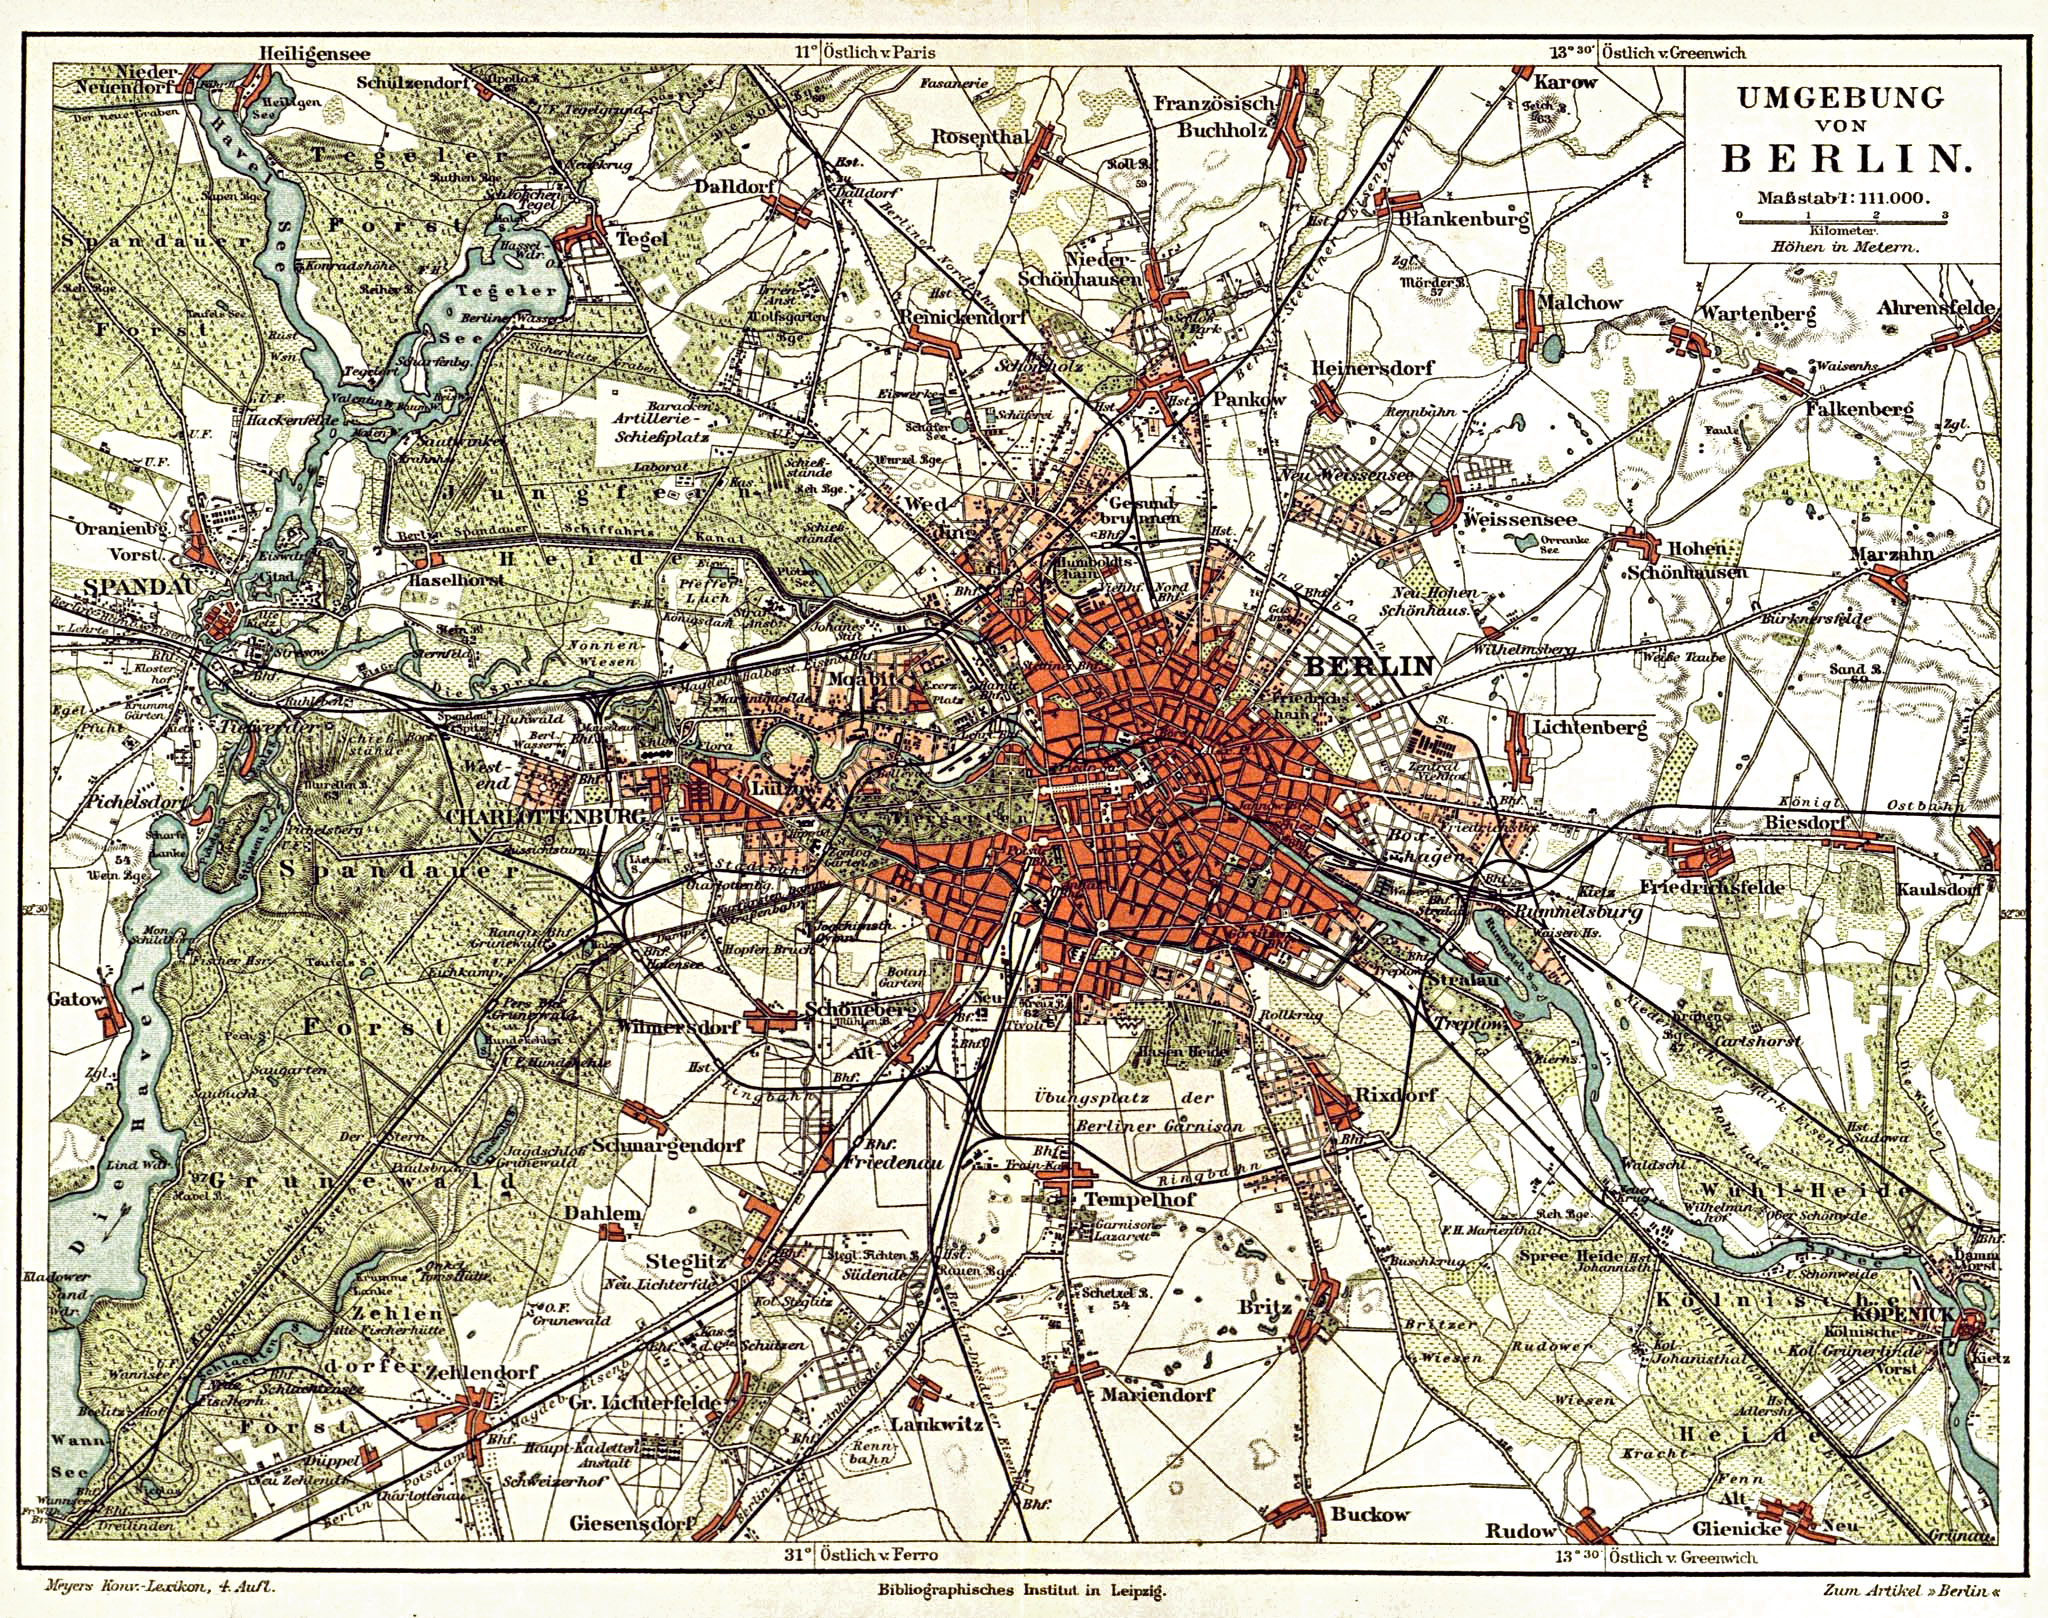 Stadtplan von Berlin aus dem 19. Jahrhundert - Quelle: Wikimedia